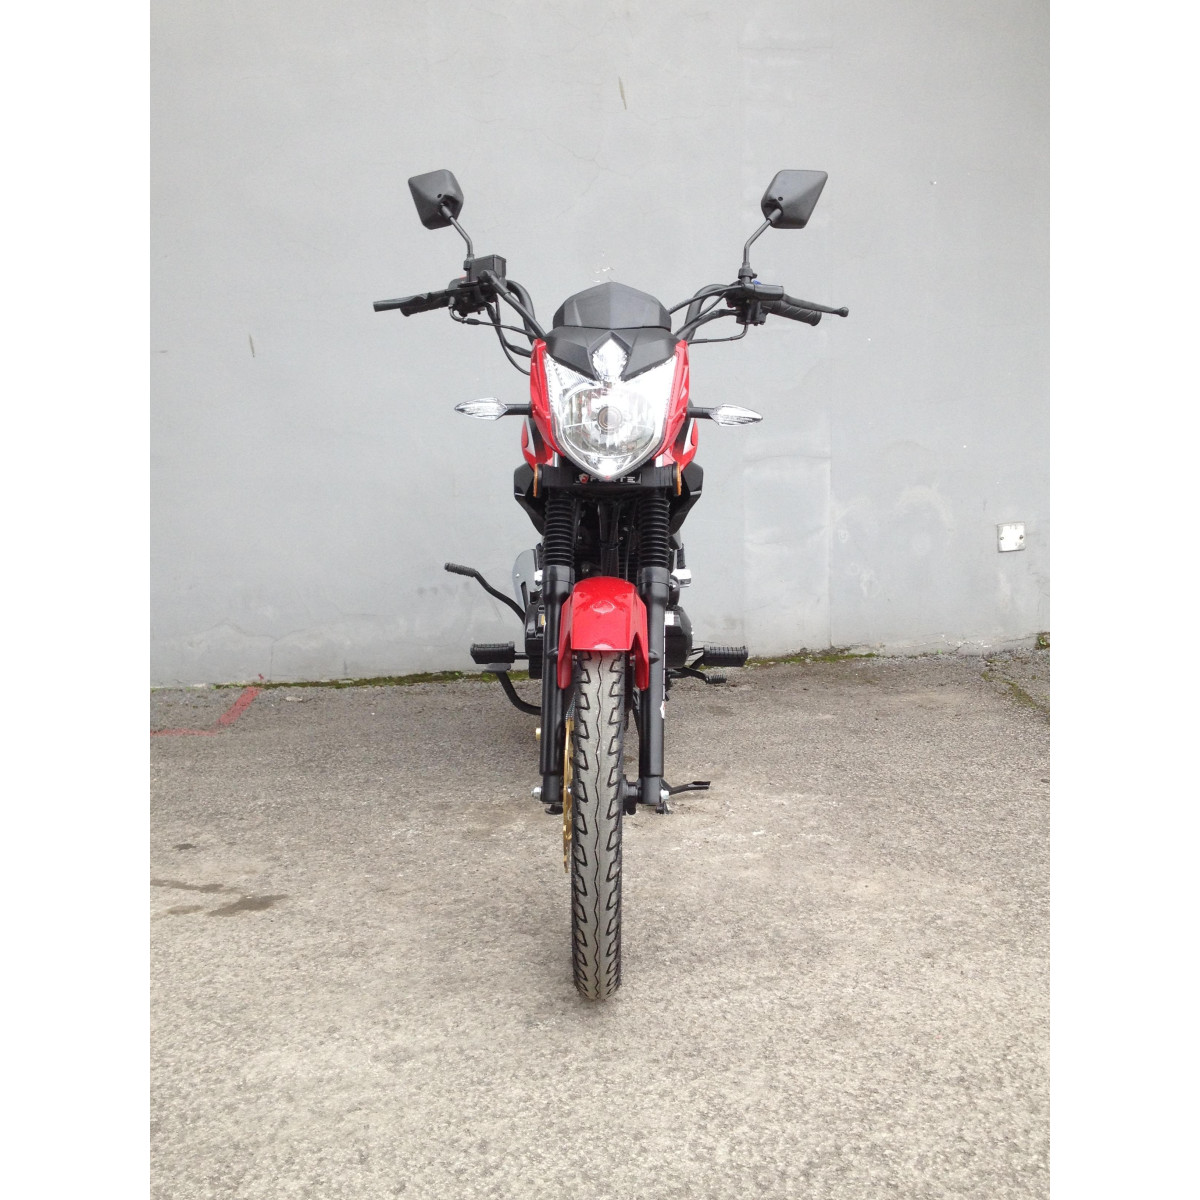 Мотоцикл FT150-23 N Forte червоний